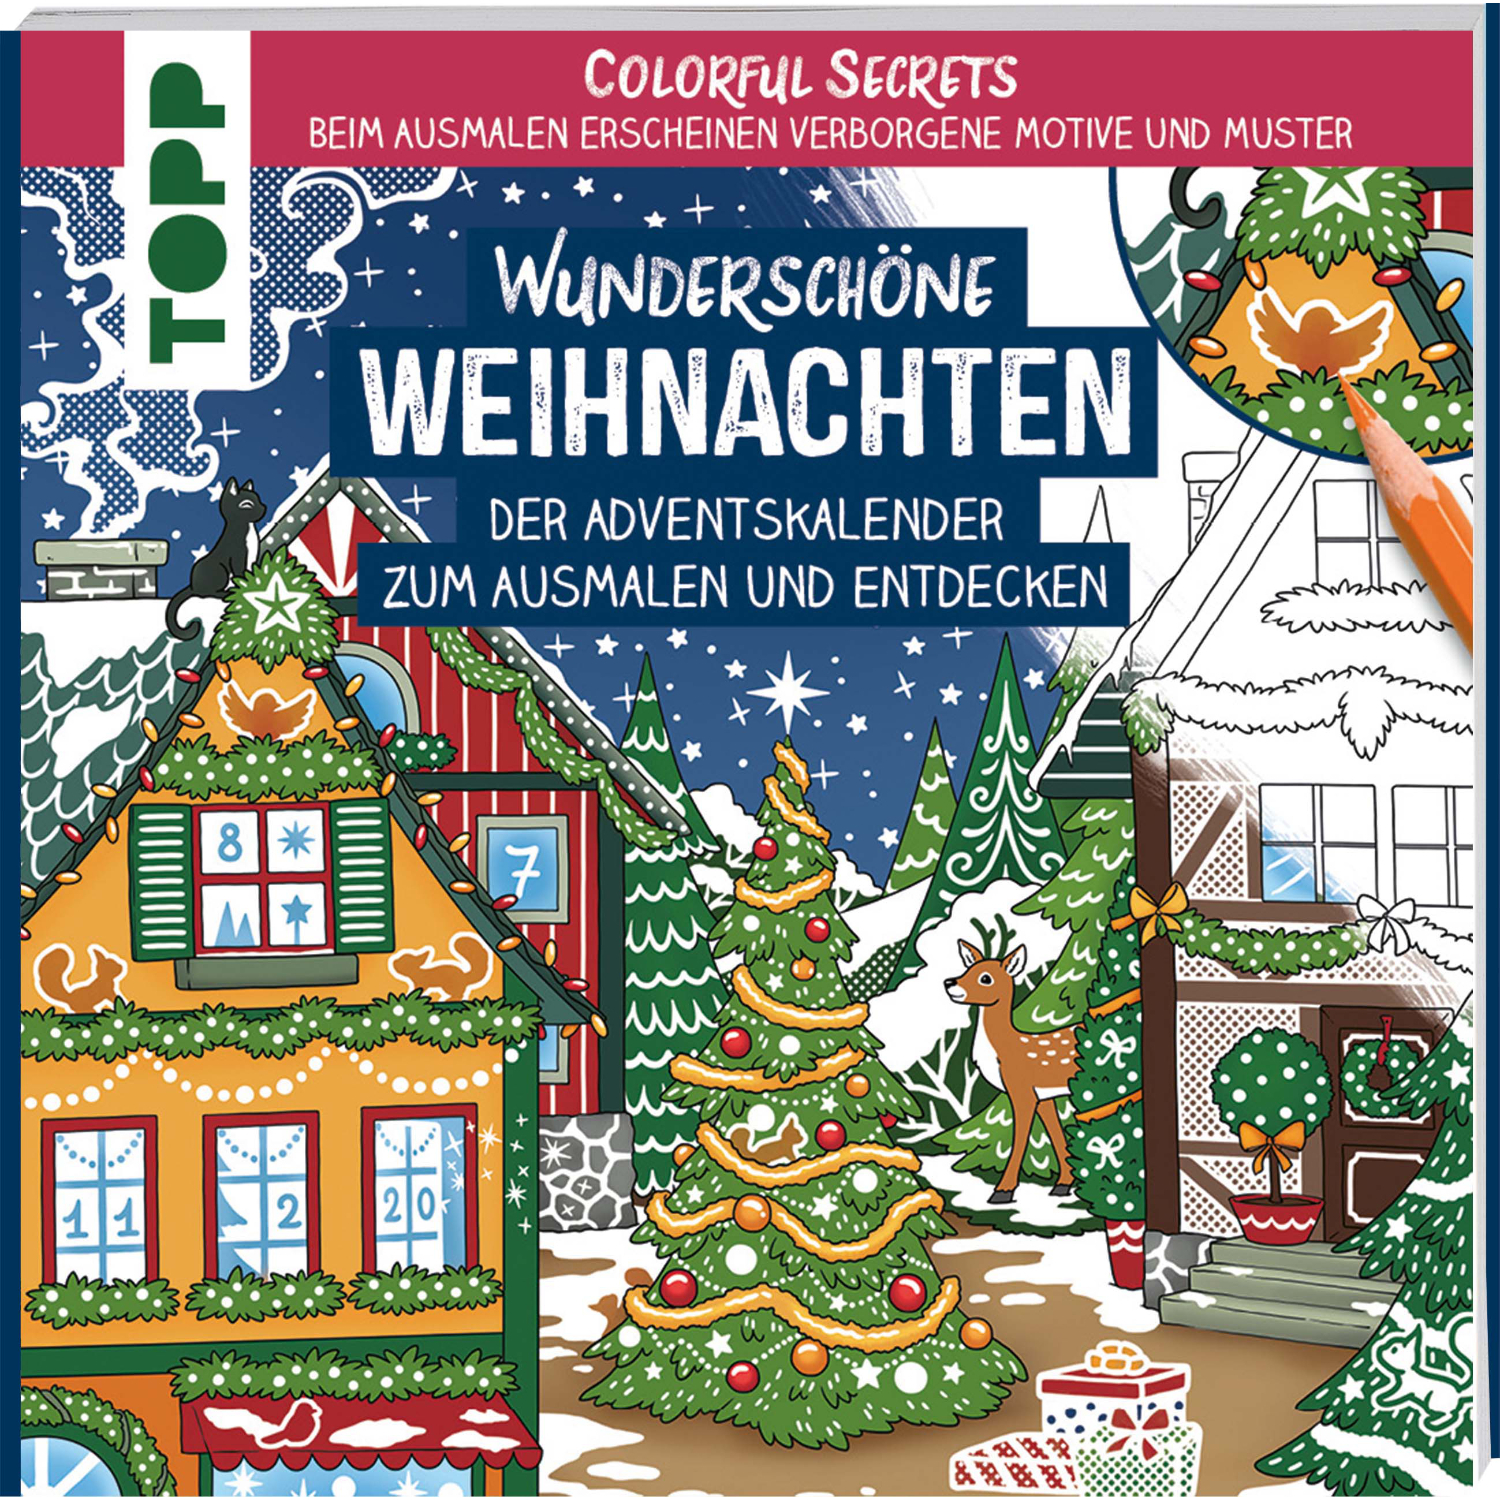 Colorful Secrets - Wunderschöne Weihnachten